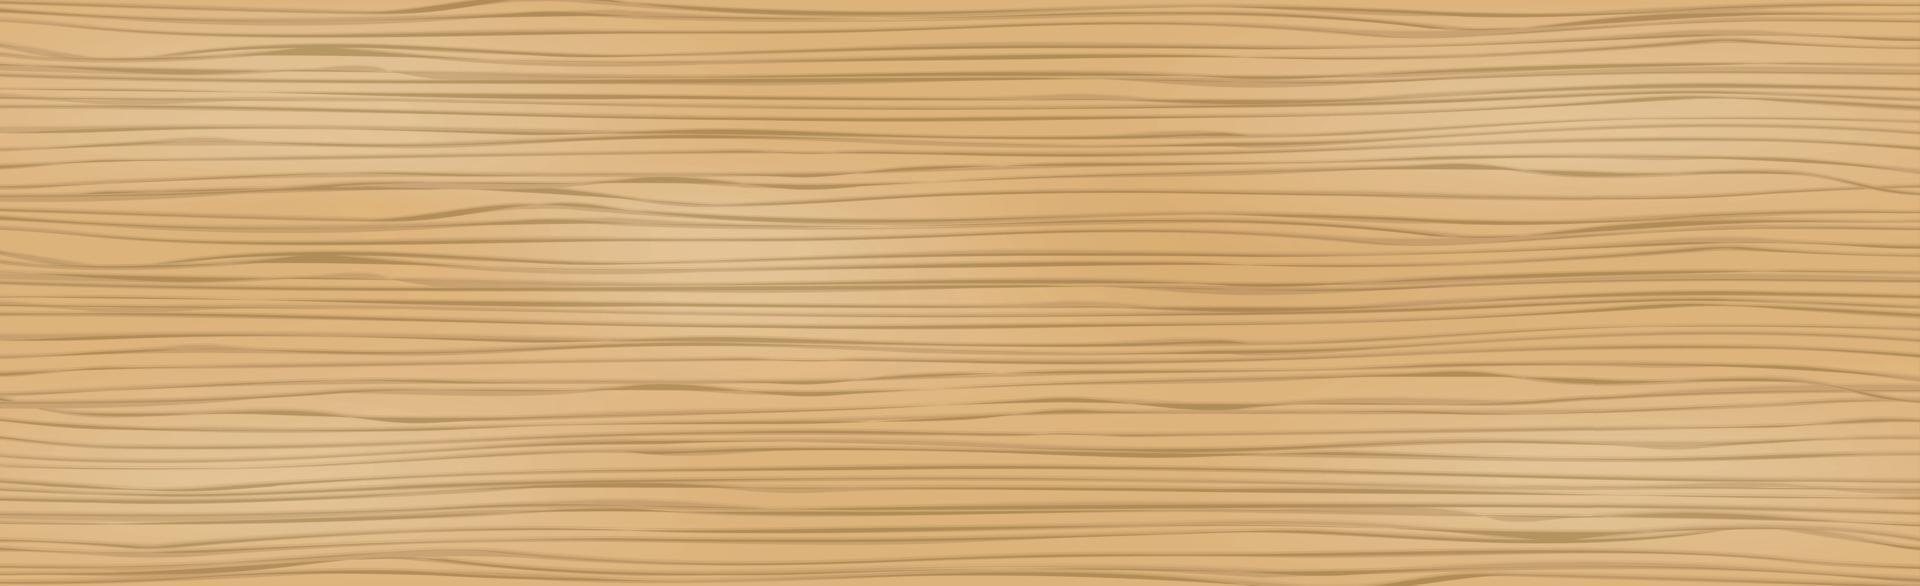 textura realista padrão de madeira clara, fundo vetor